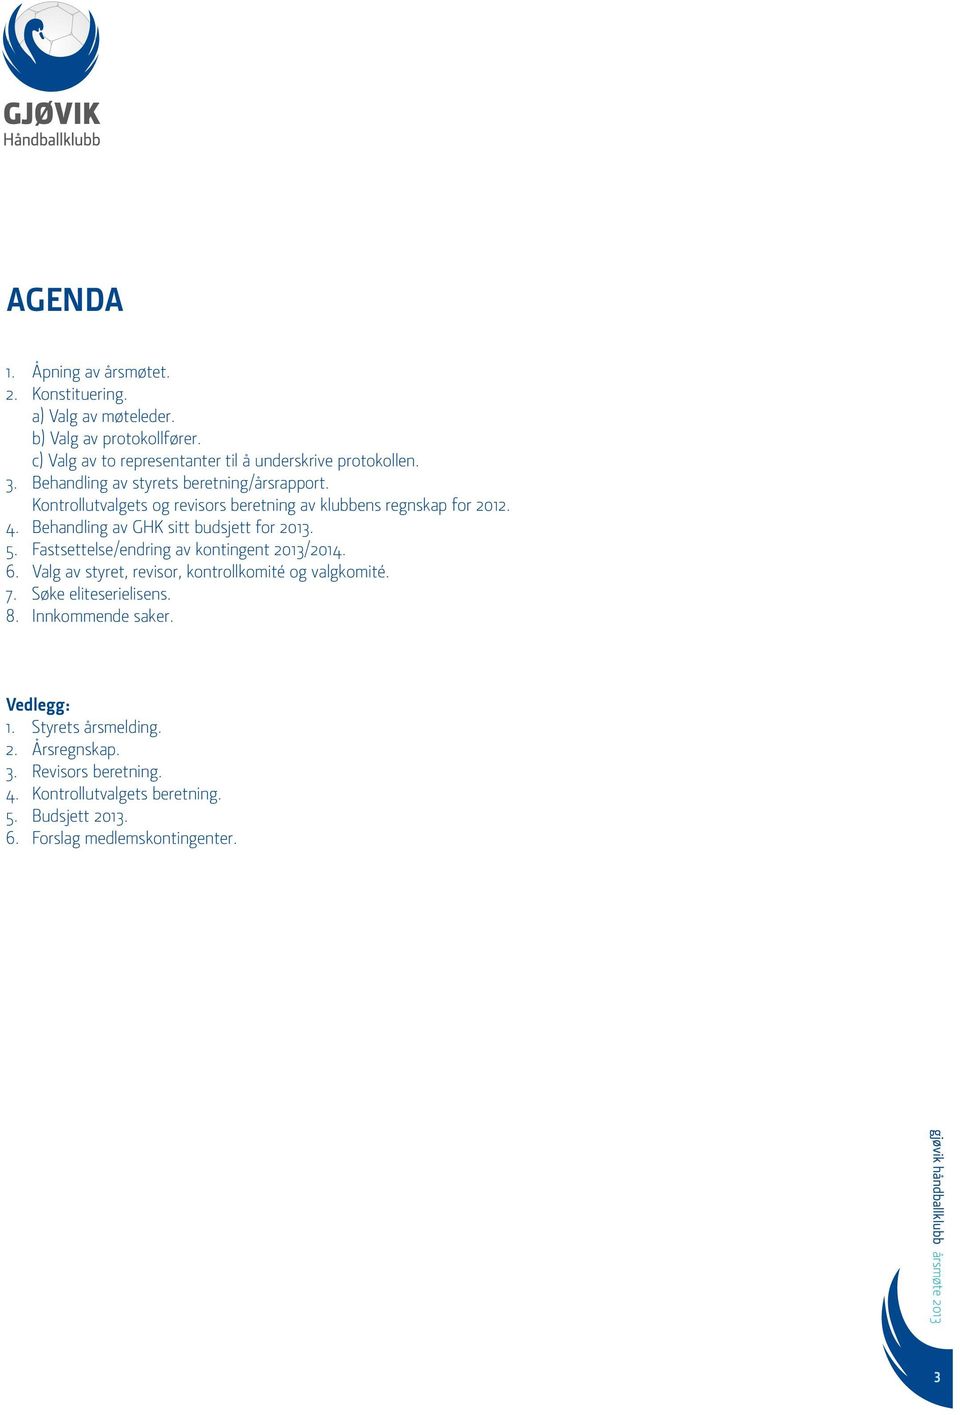 Behandling av GHK sitt budsjett for 2013. 5. Fastsettelse/endring av kontingent 2013/2014. 6. Valg av styret, revisor, kontrollkomité og valgkomité. 7.